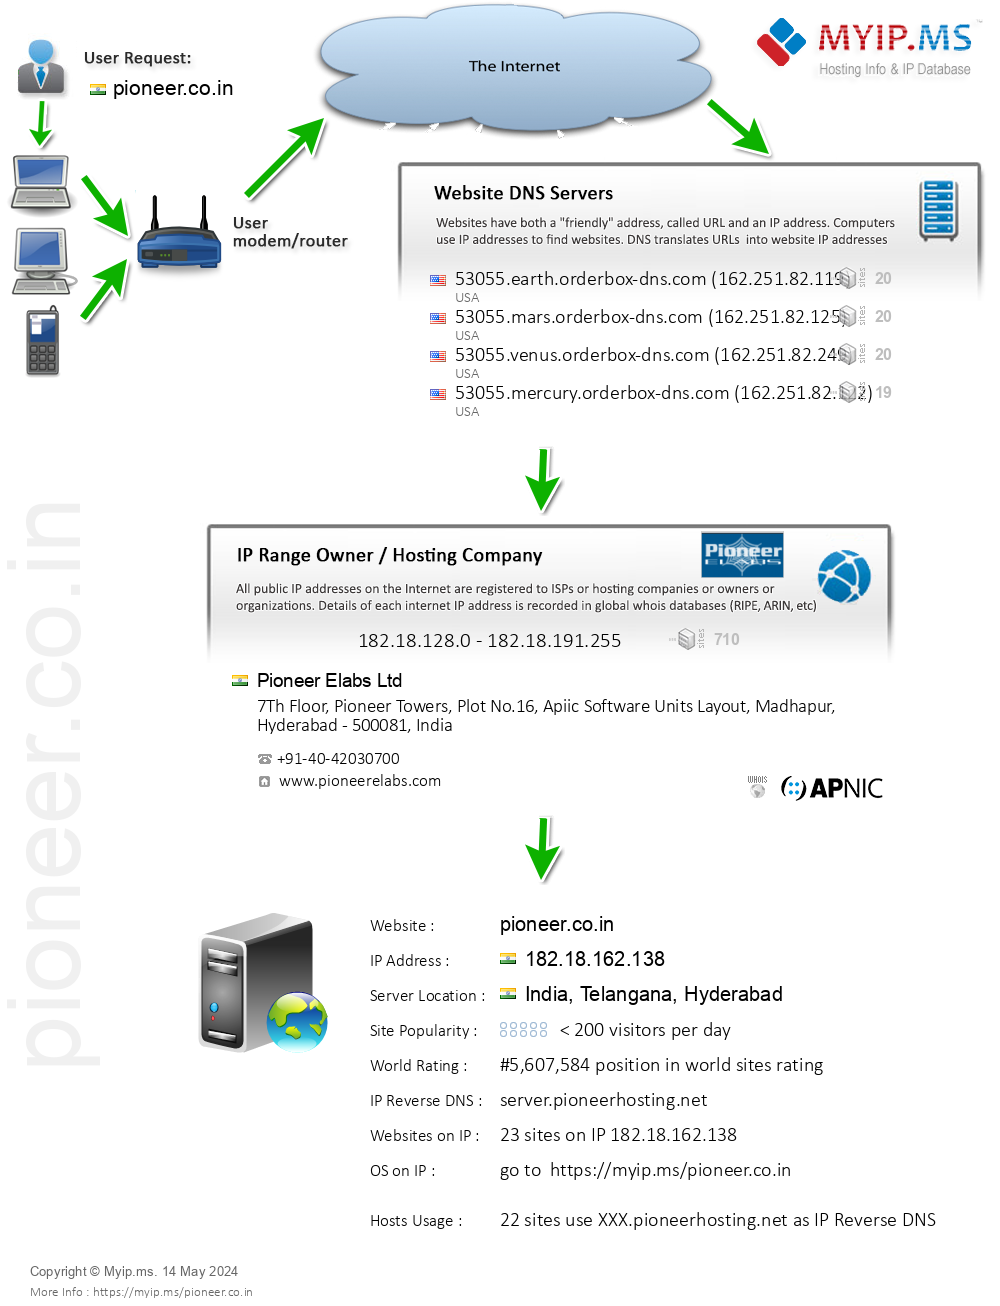 Pioneer.co.in - Website Hosting Visual IP Diagram